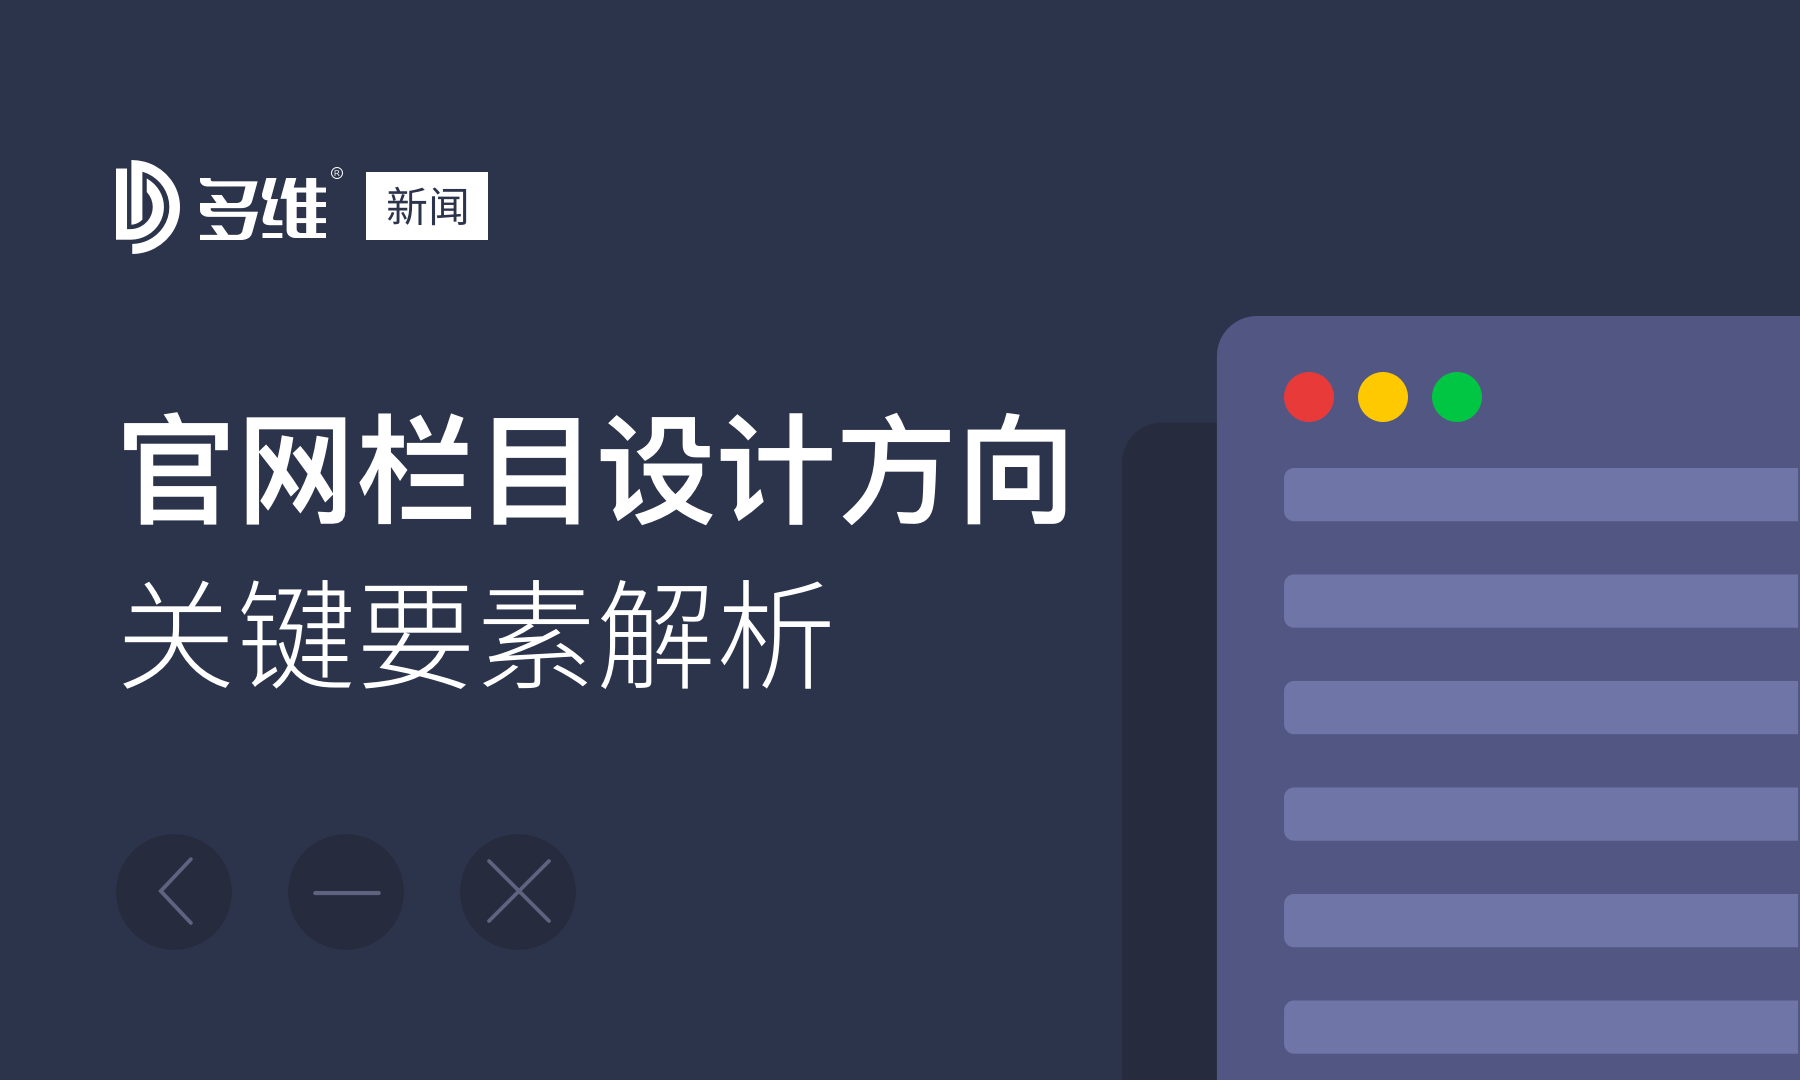 北京多维网讯科技有限公司